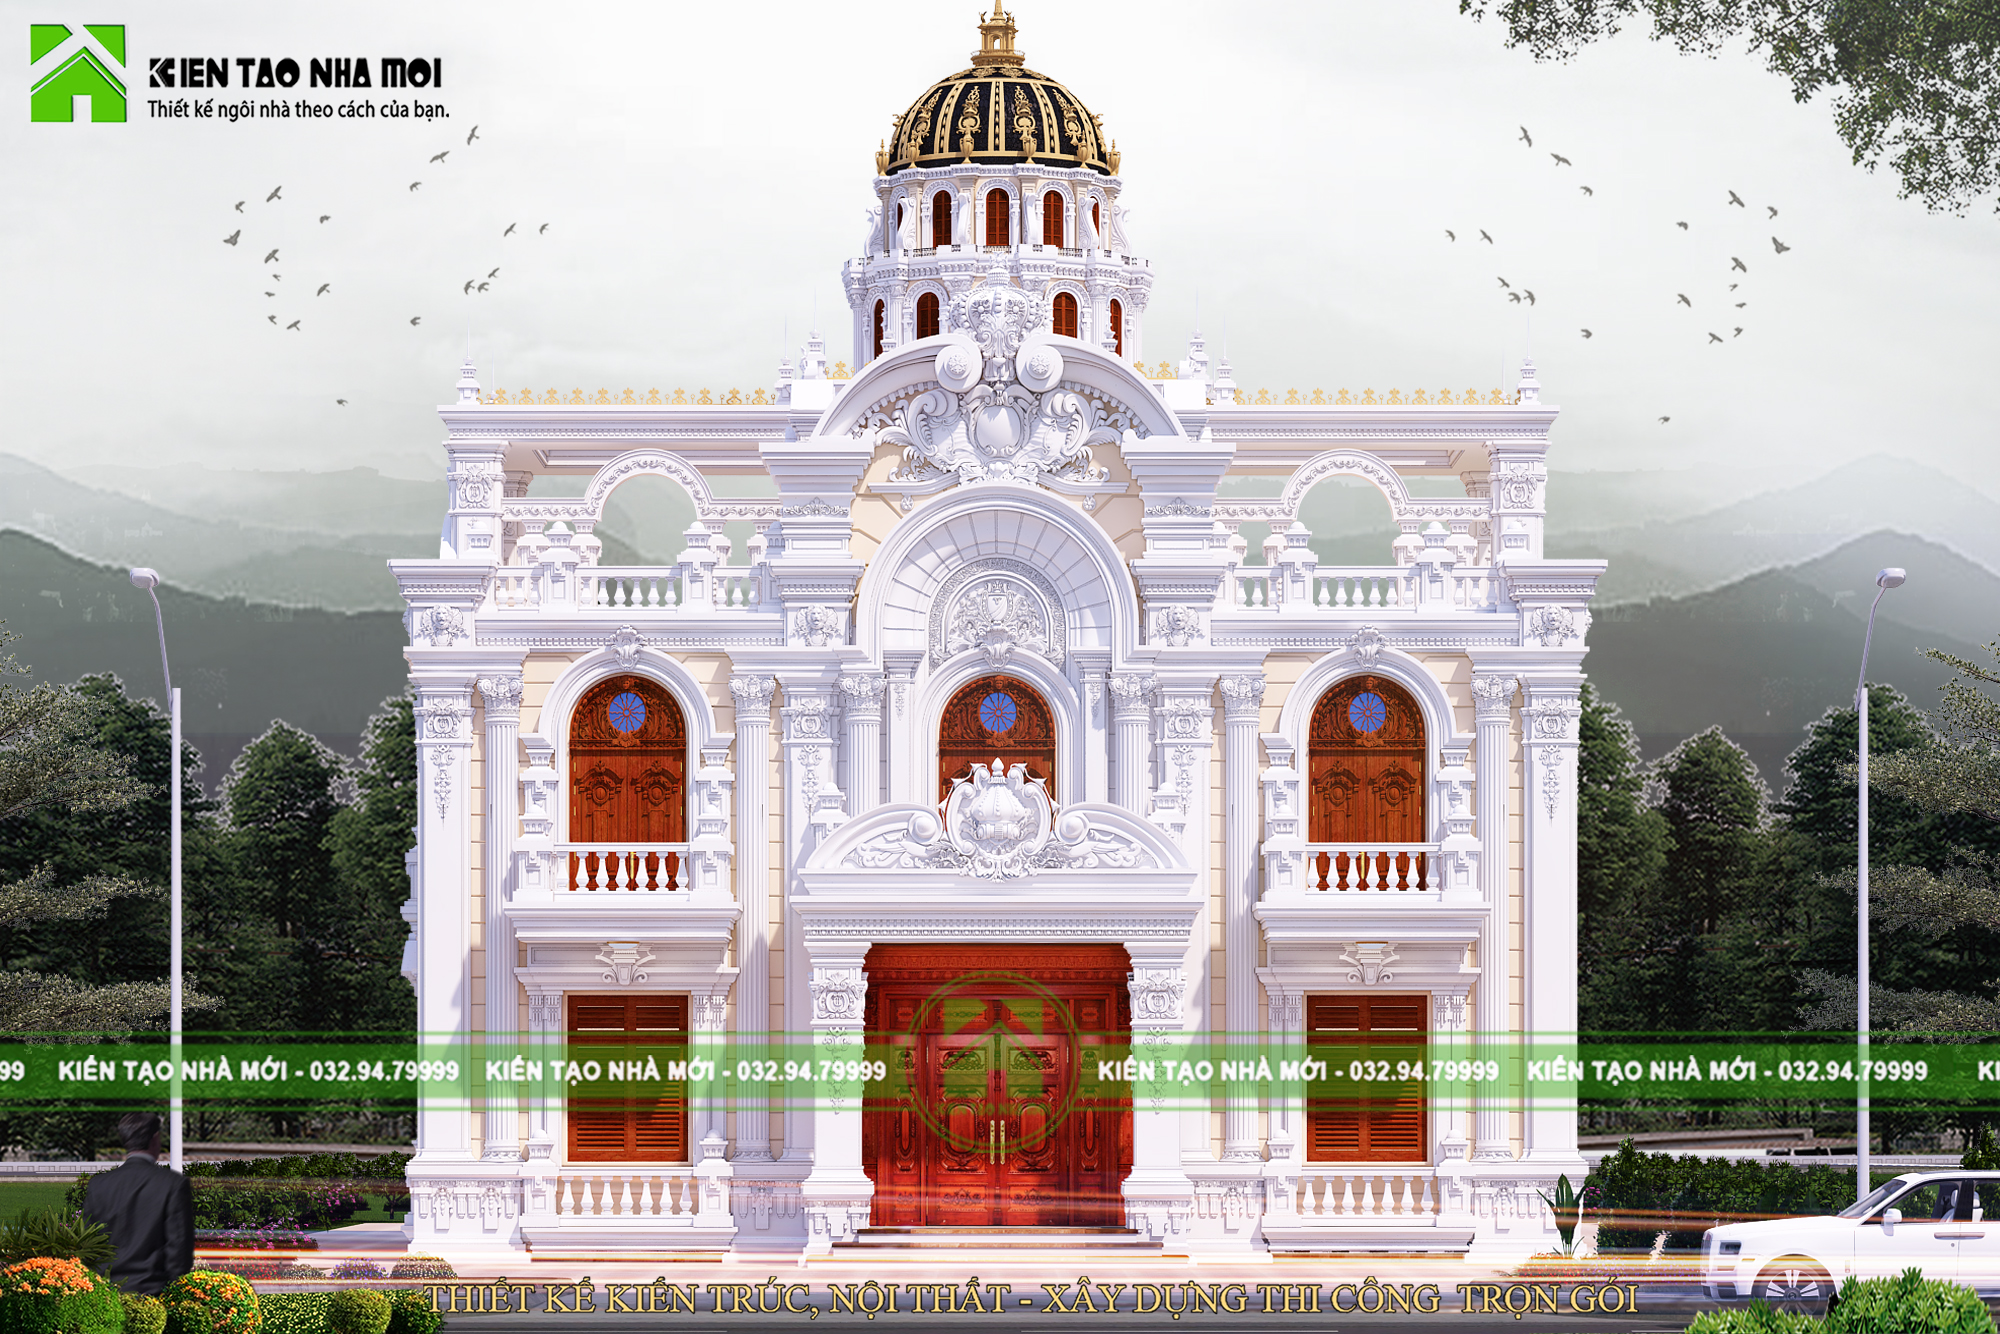 Thiết kế Biệt Thự tại Bắc Ninh Thiết kế lâu đài cổ điển 2 tầng đẳng cấp đẹp 1587266670 0